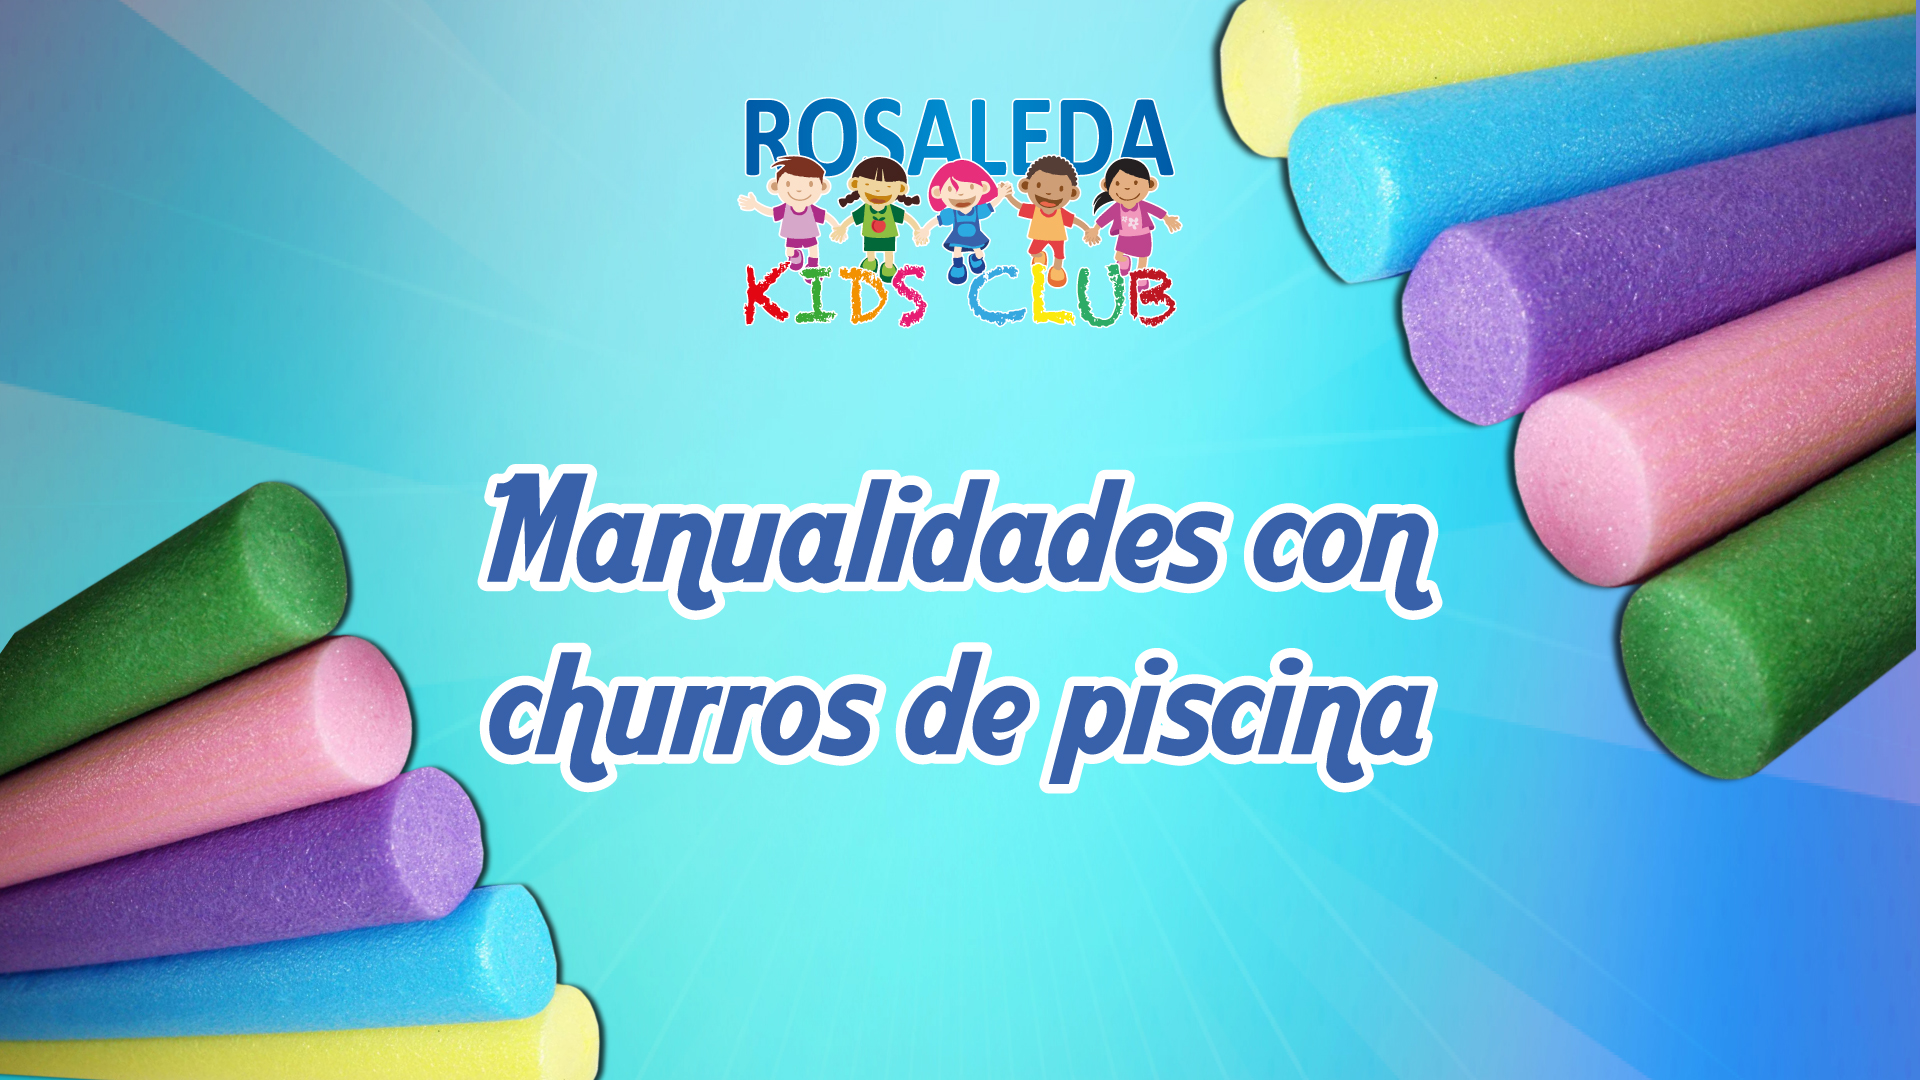 Las manualidades de Rosaleda Kids Club: juegos con churros de piscina